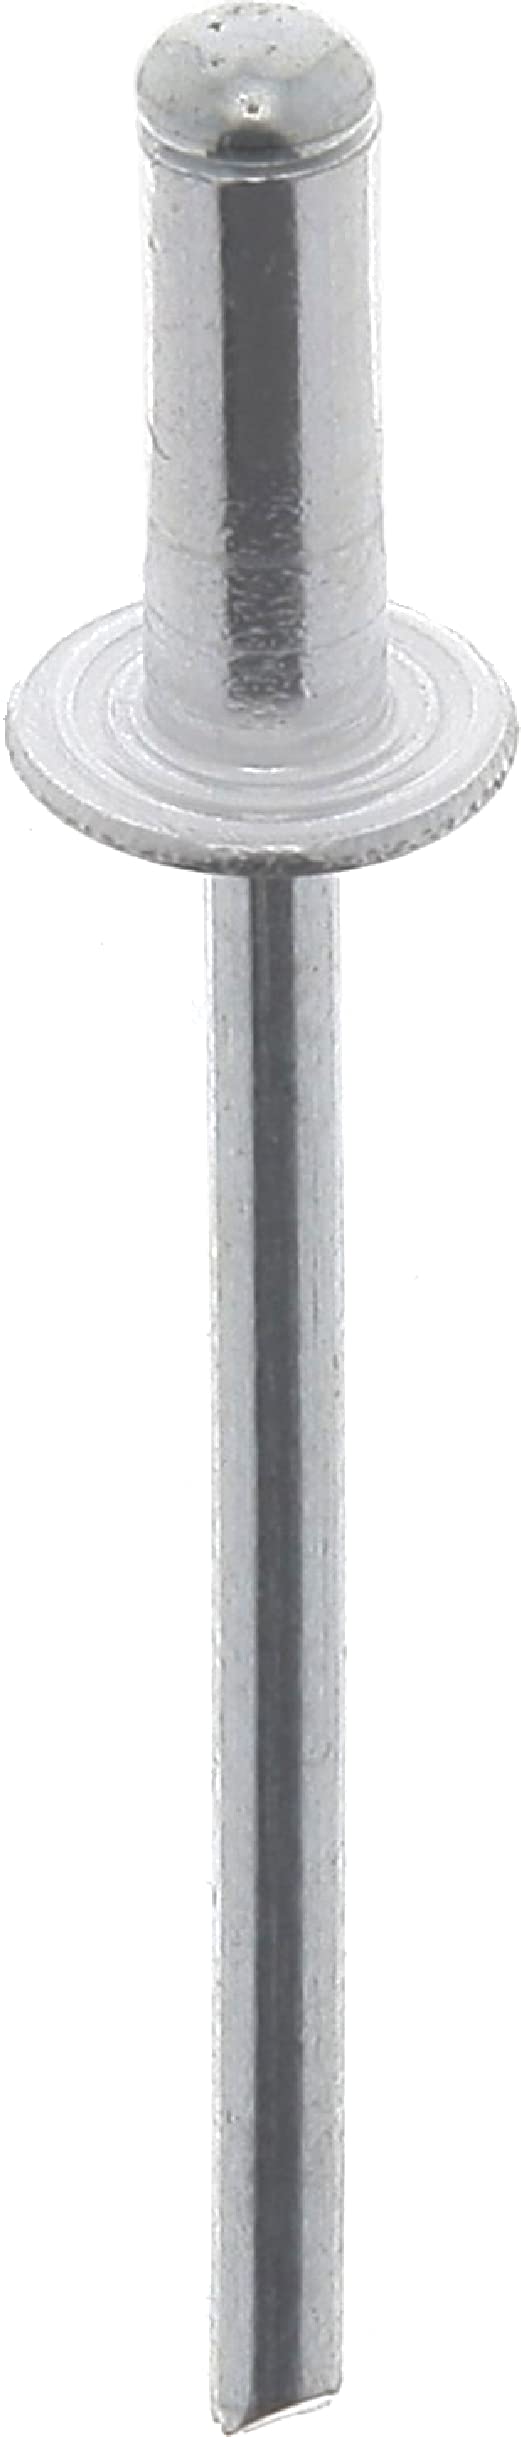 Restagraf 4013 Nieten, grau, 3 mm x 10 mm von Restagraf